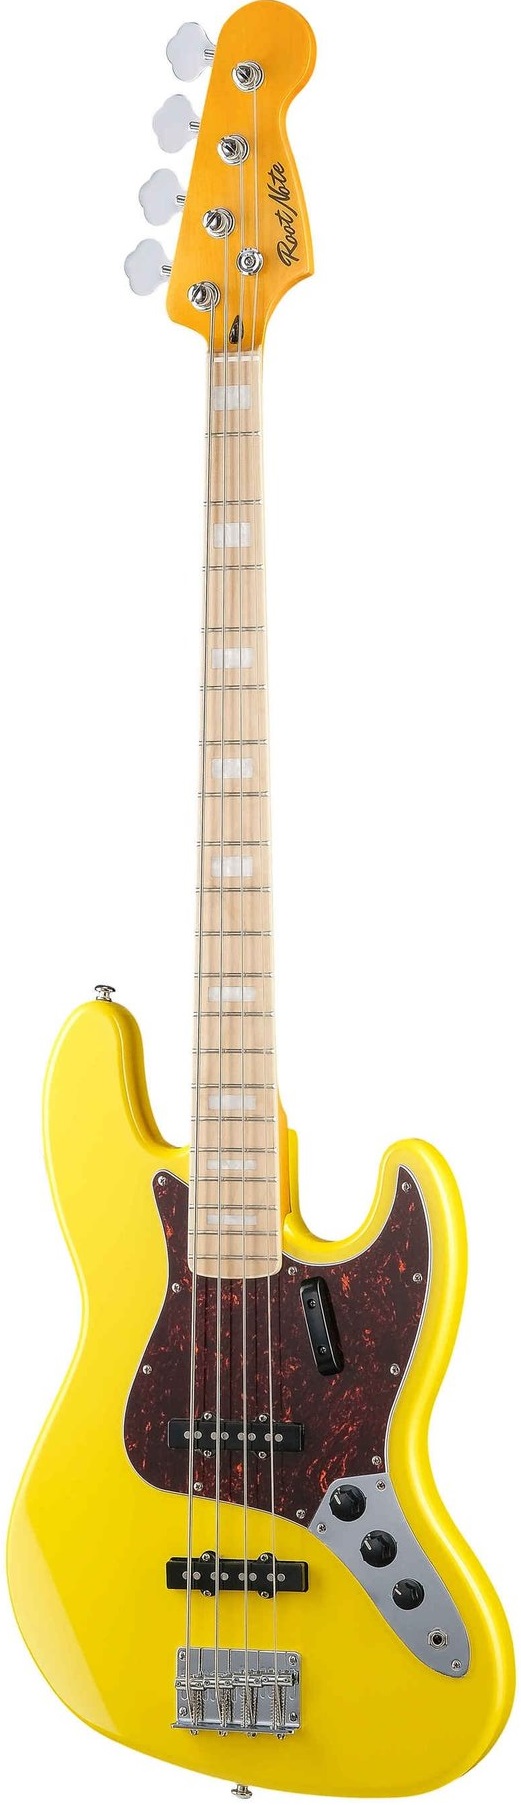 Бас-гитары Root Note JB001-VWH гитара вешалка деревянный струнный инструмент настенное крепление держатель крюка для электроакустической гитары бас укулеле